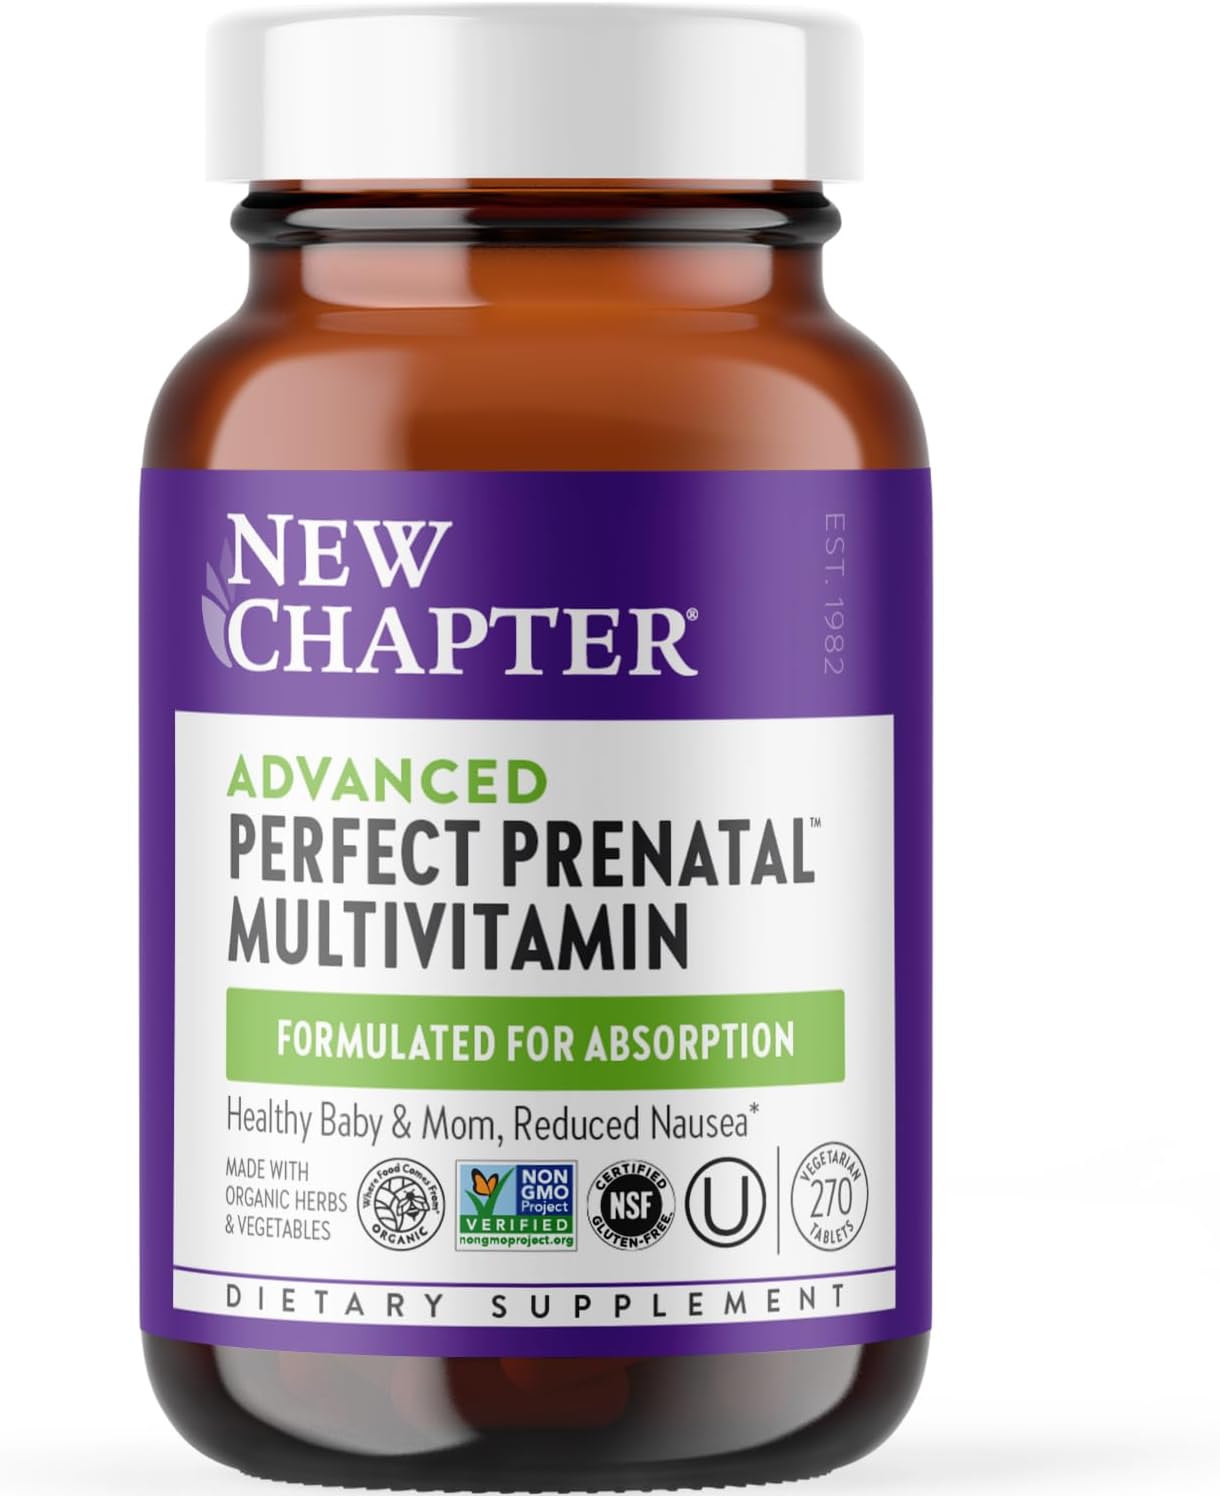 New Chapter advanced perfect prenatal multivitamin